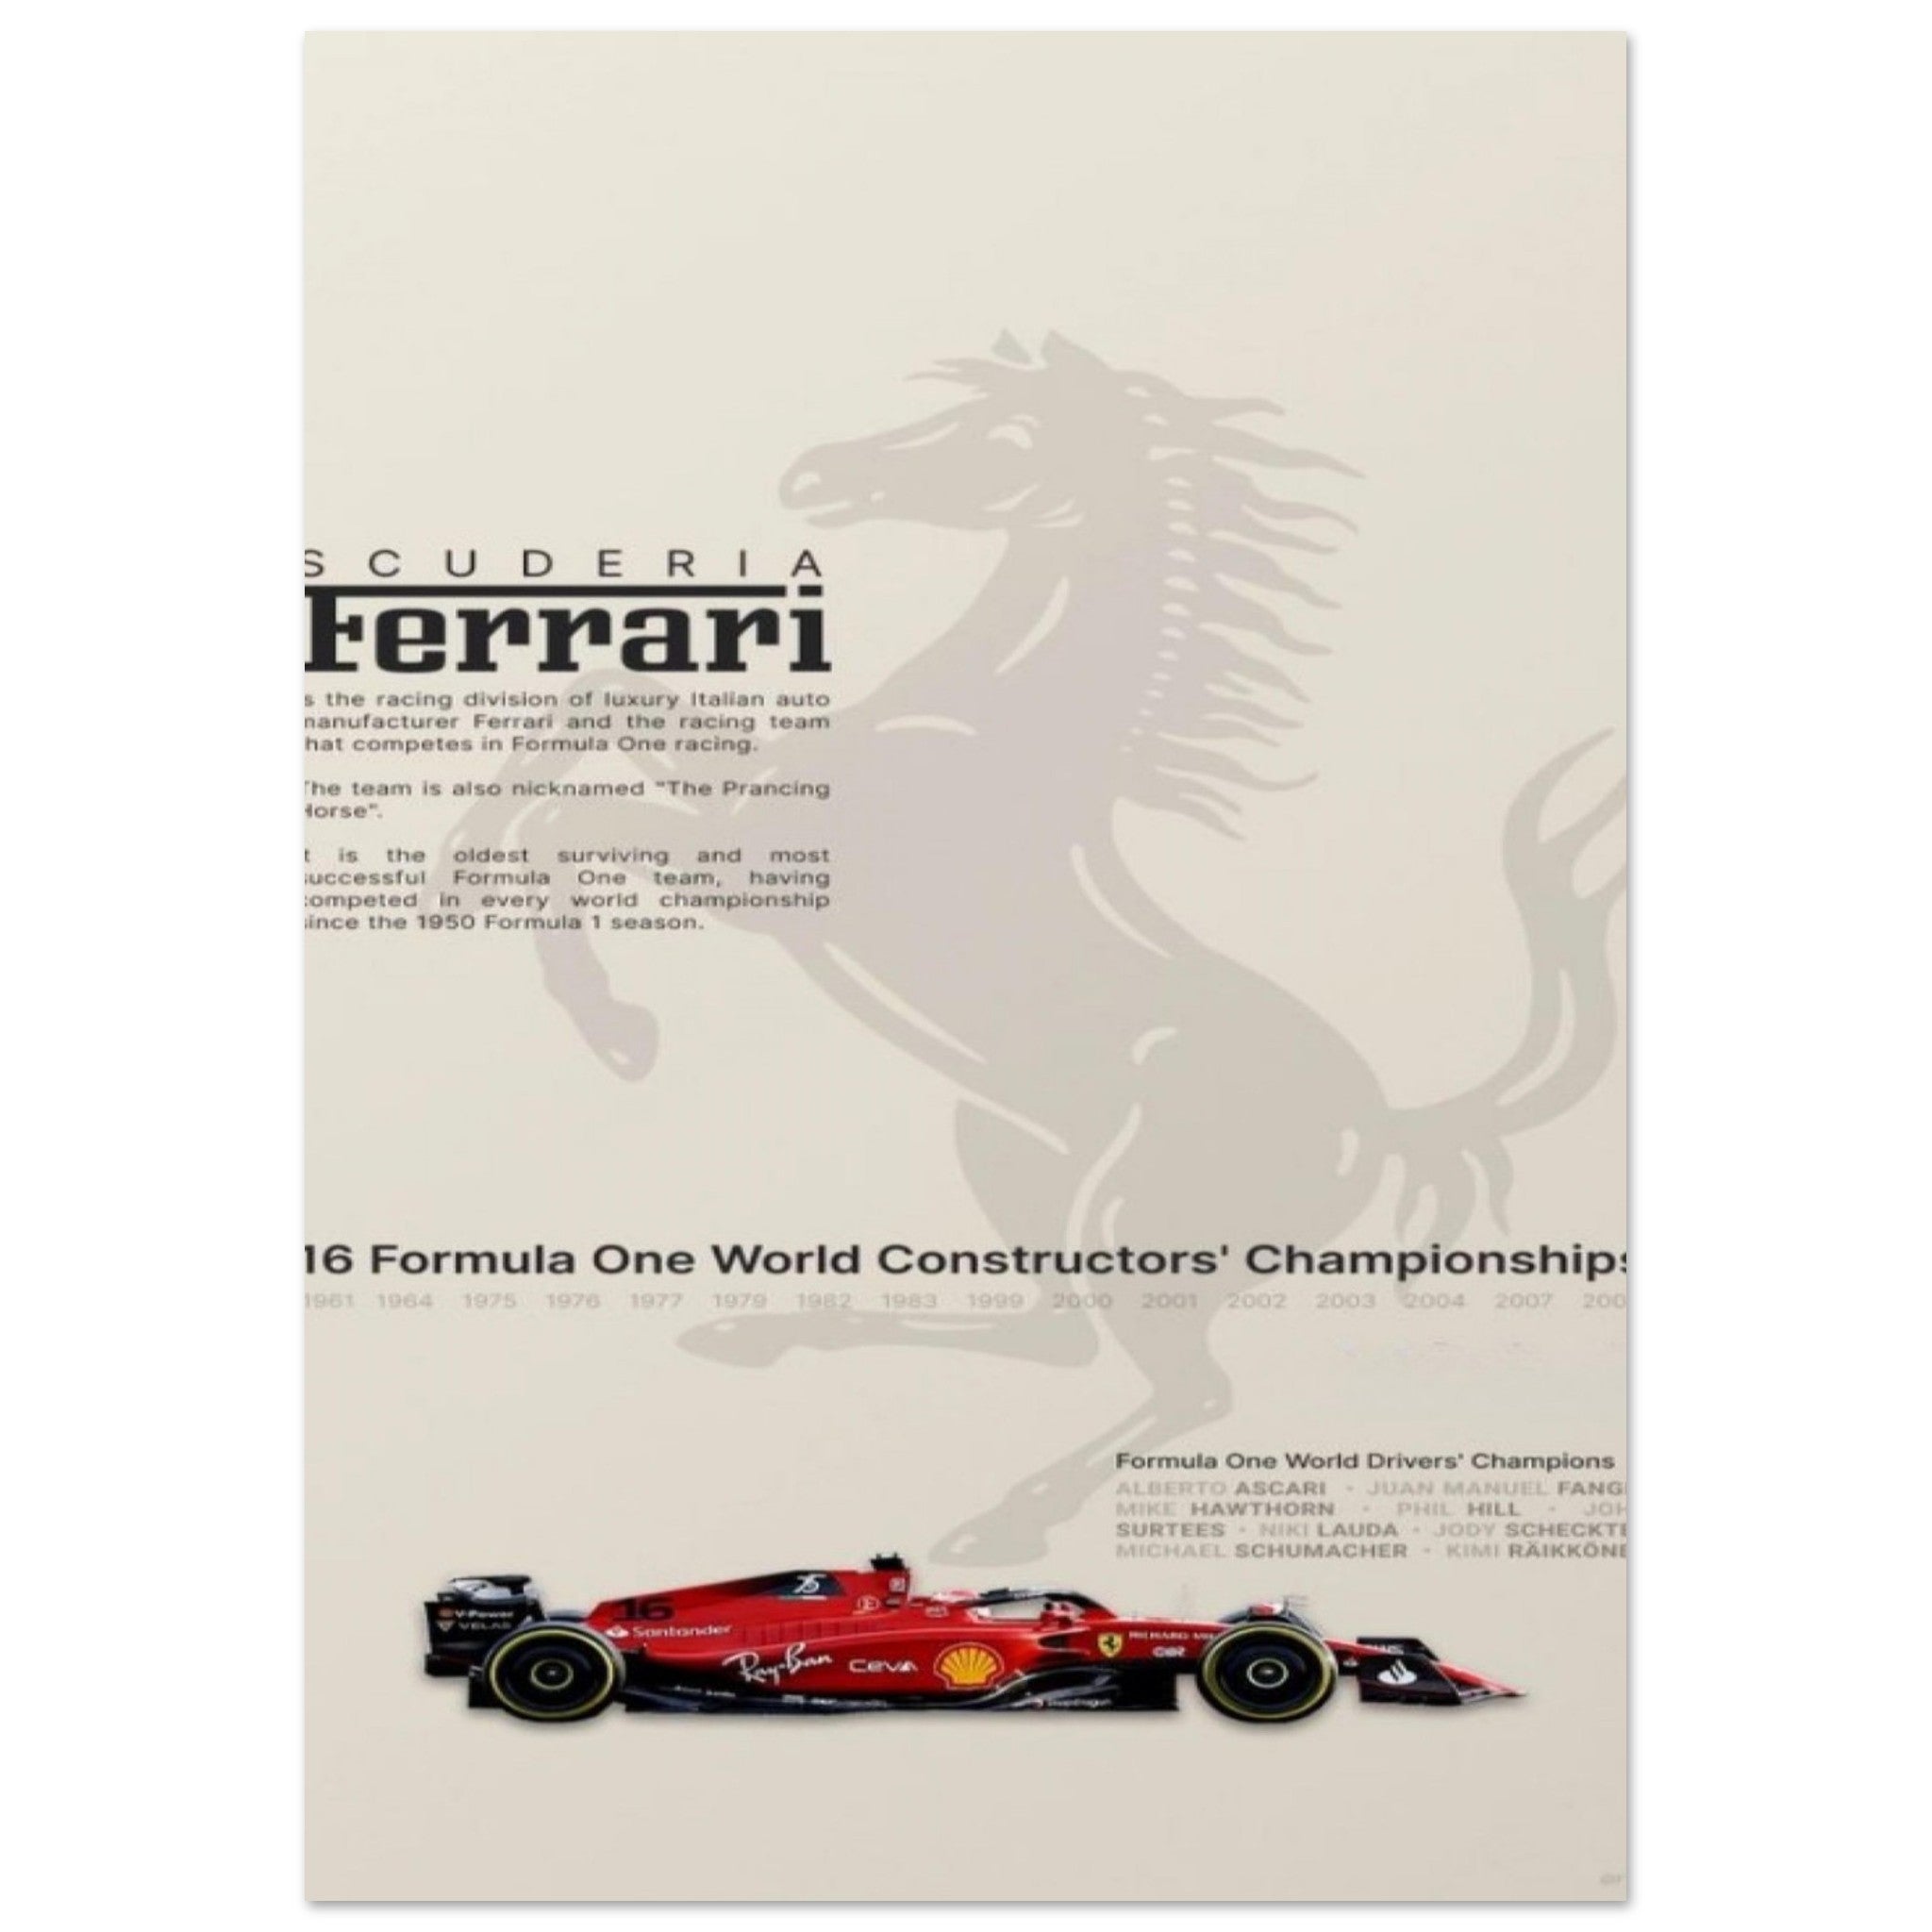 Scuderia Ferrari F1 poster